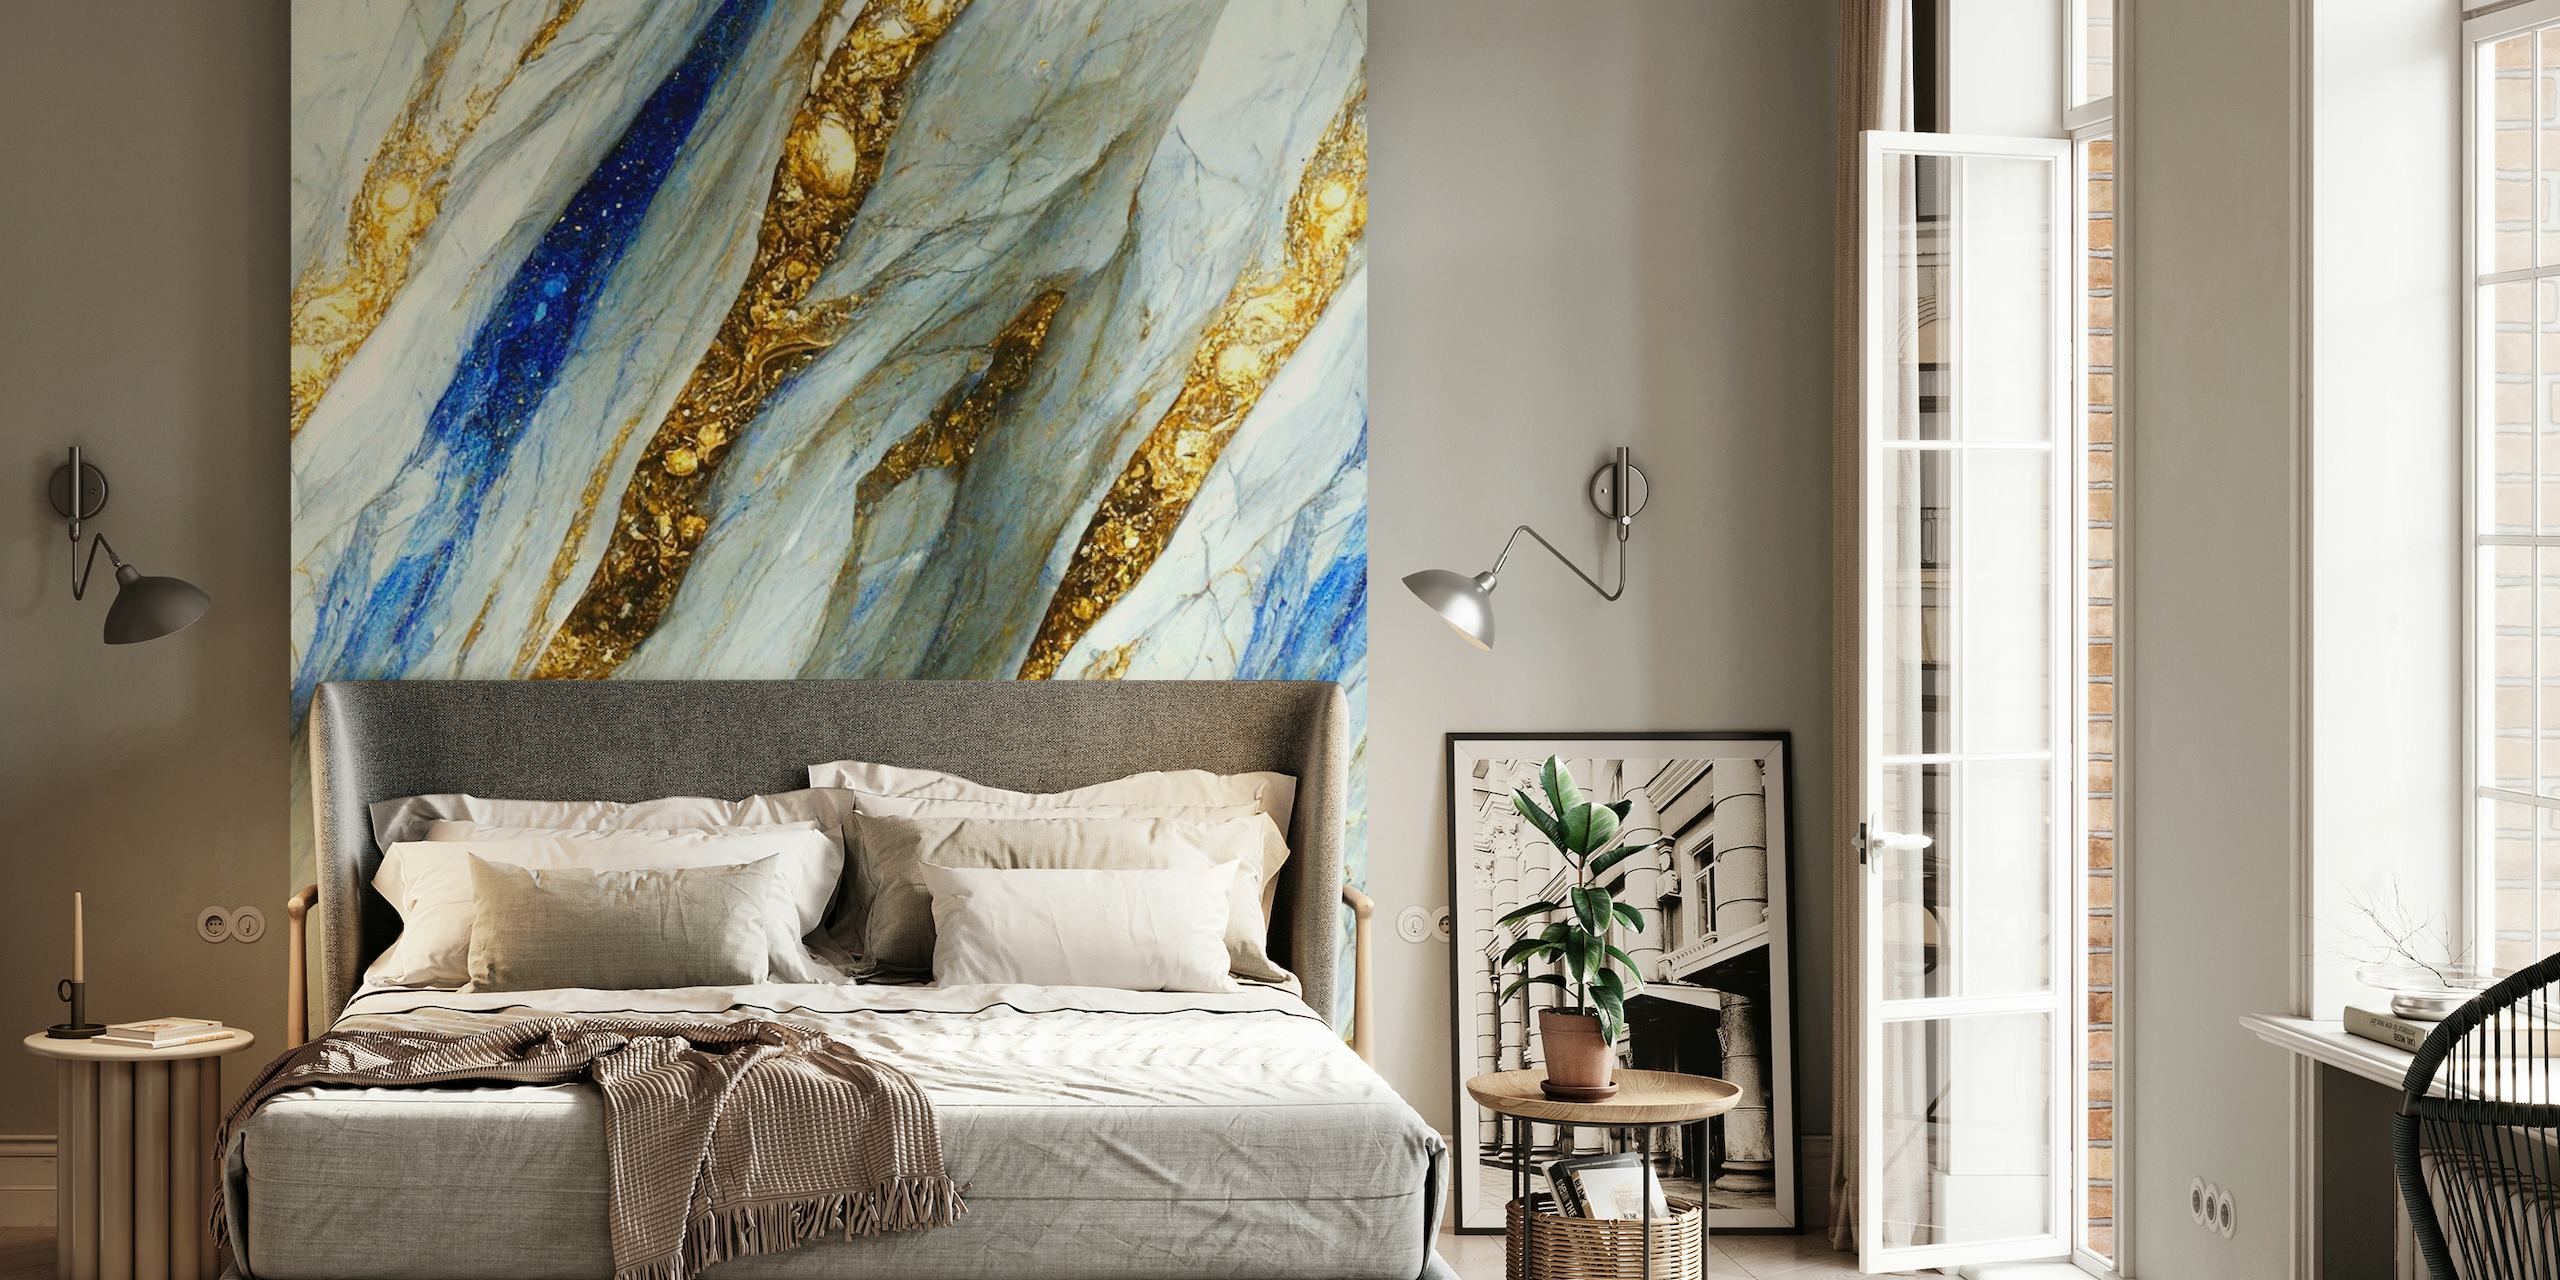 Peinture murale élégante avec des motifs de marbre doré, bleu et blanc ressemblant à des rivières coulantes d'or liquide et de pierres précieuses.